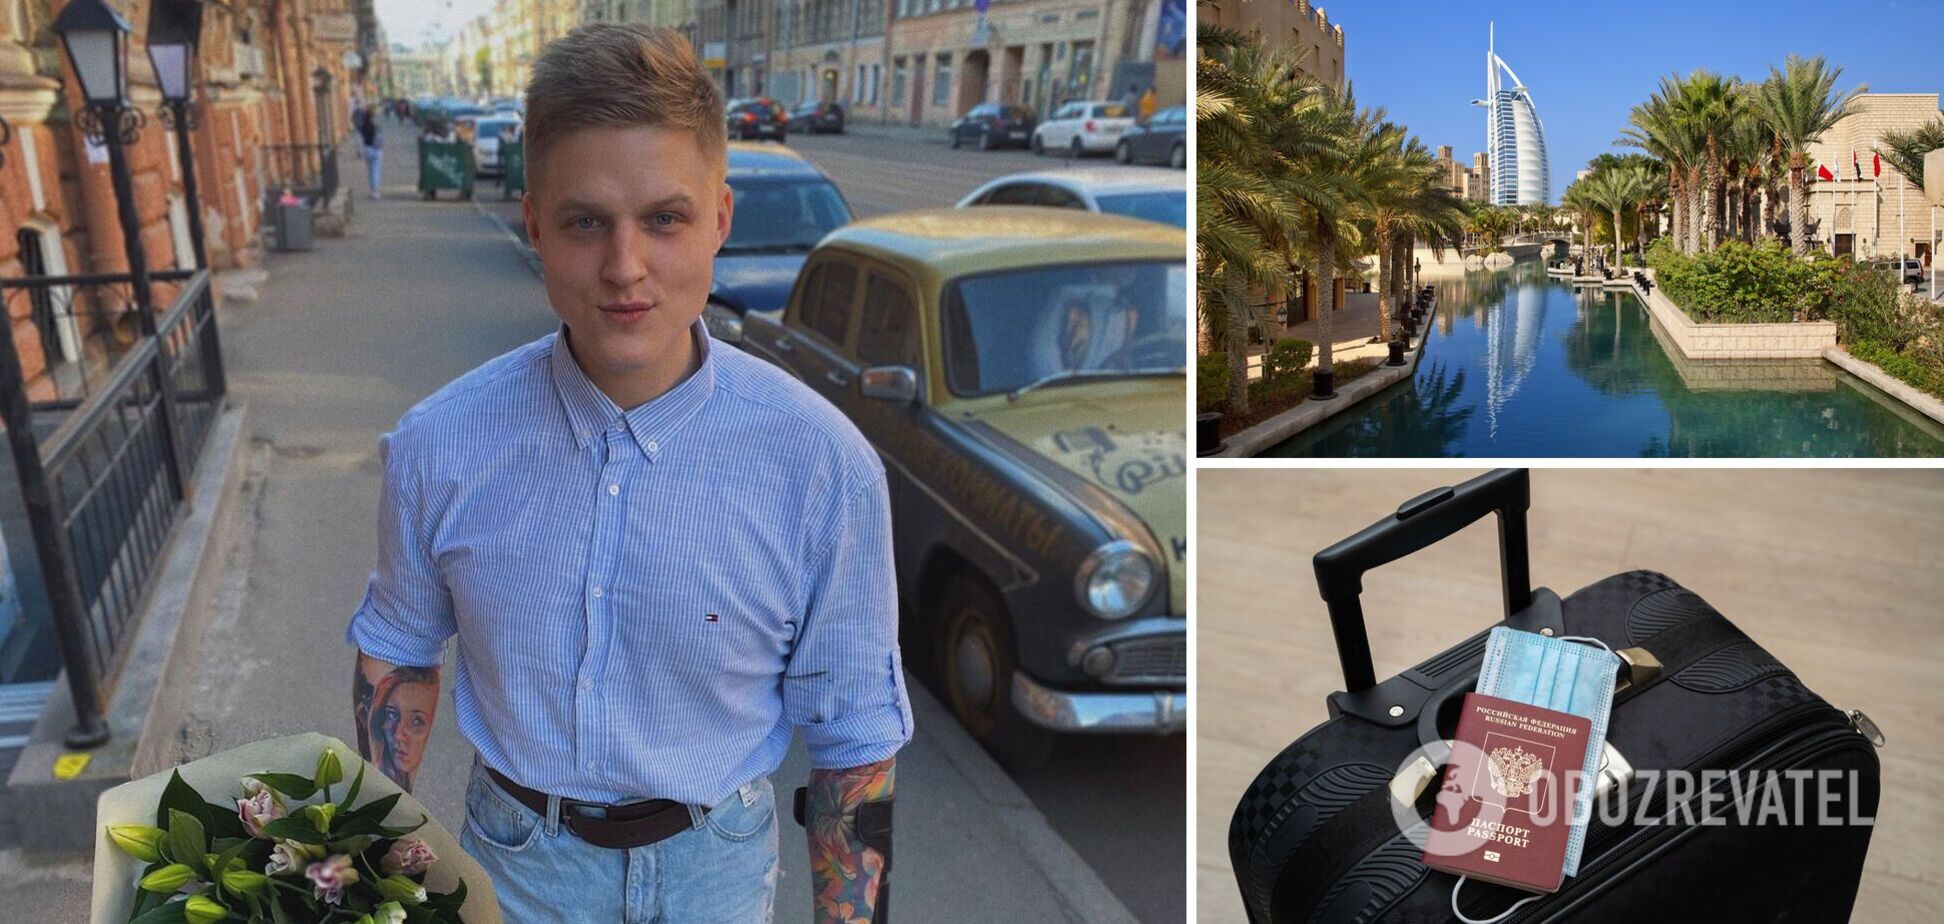 'Як бути за кордоном росіянам?!' Російський блогер Сергій Кутовий не зміг поїхати на відпочинок у Дубай через санкції